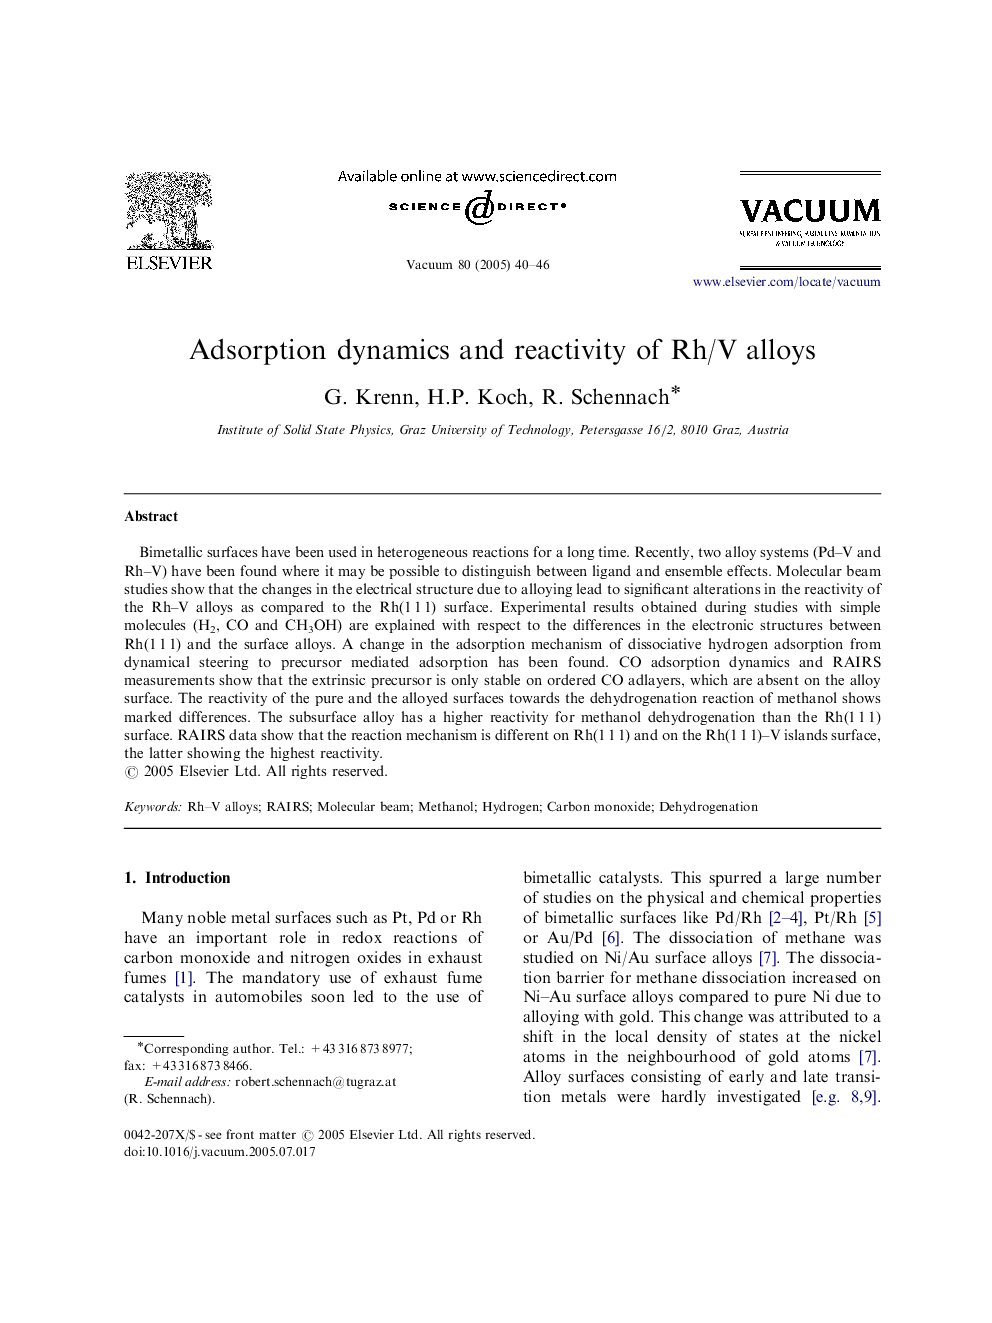 Adsorption dynamics and reactivity of Rh/V alloys